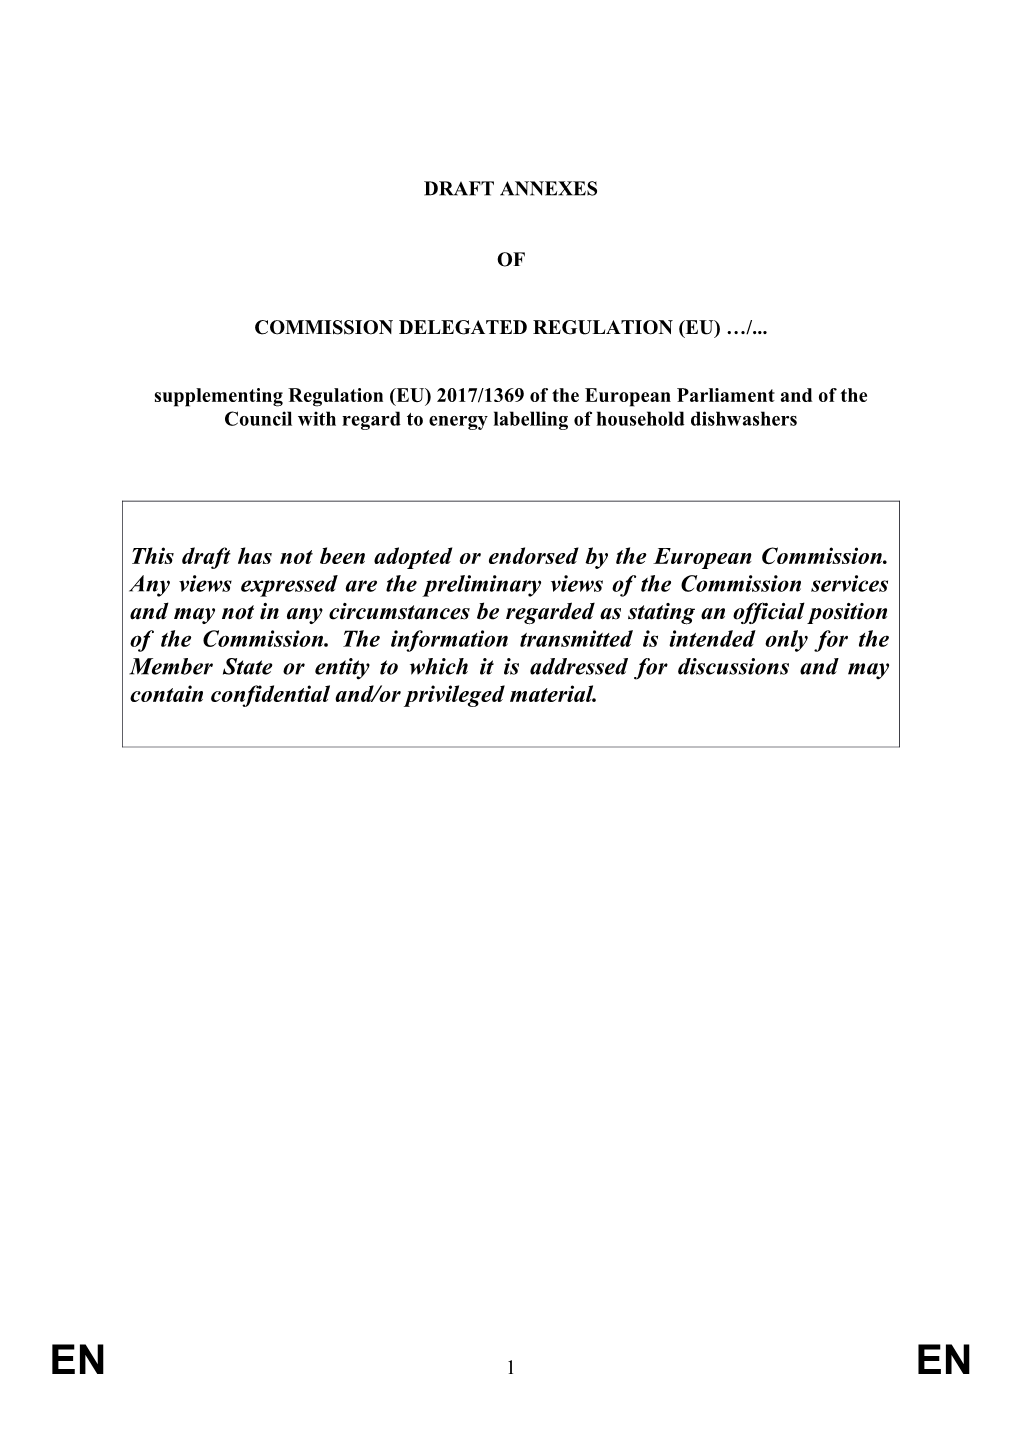 Commission Delegated Regulation (Eu) s2